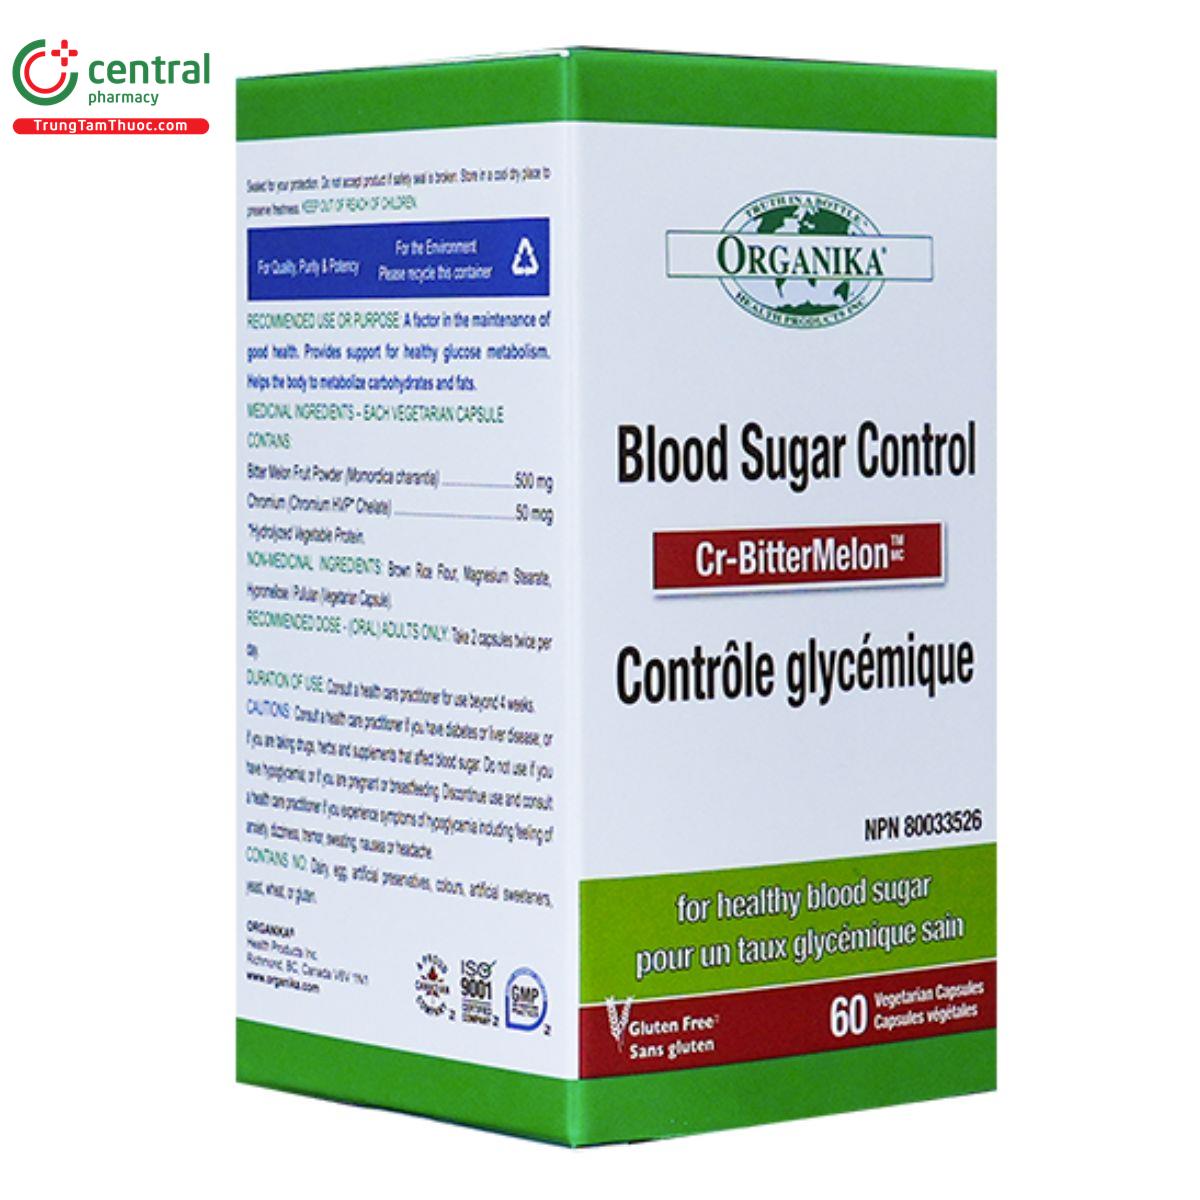 blood sugar control 4 S7865